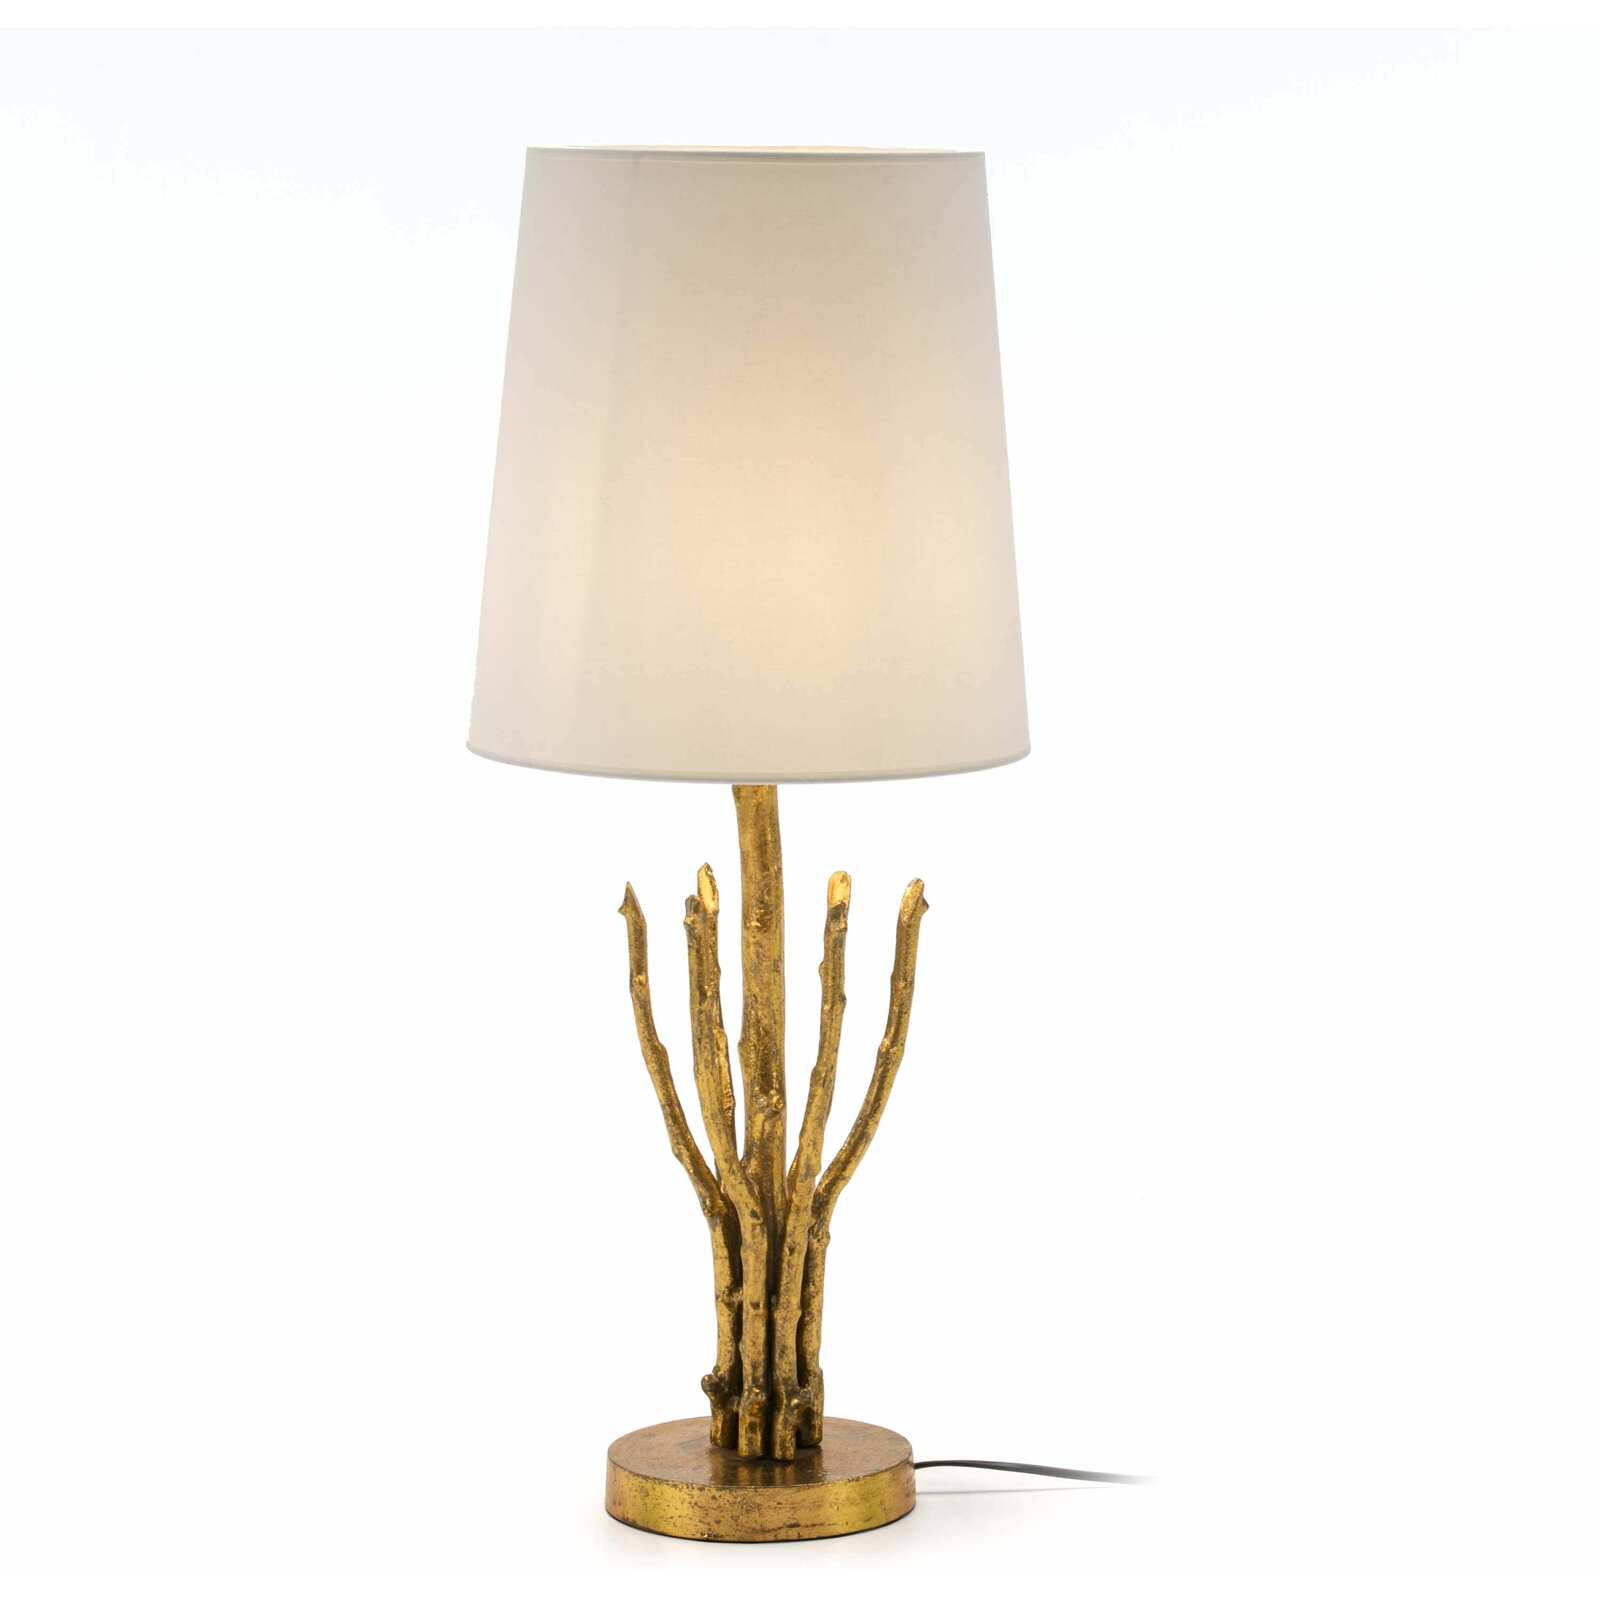 Lampe de table design couleur dorée